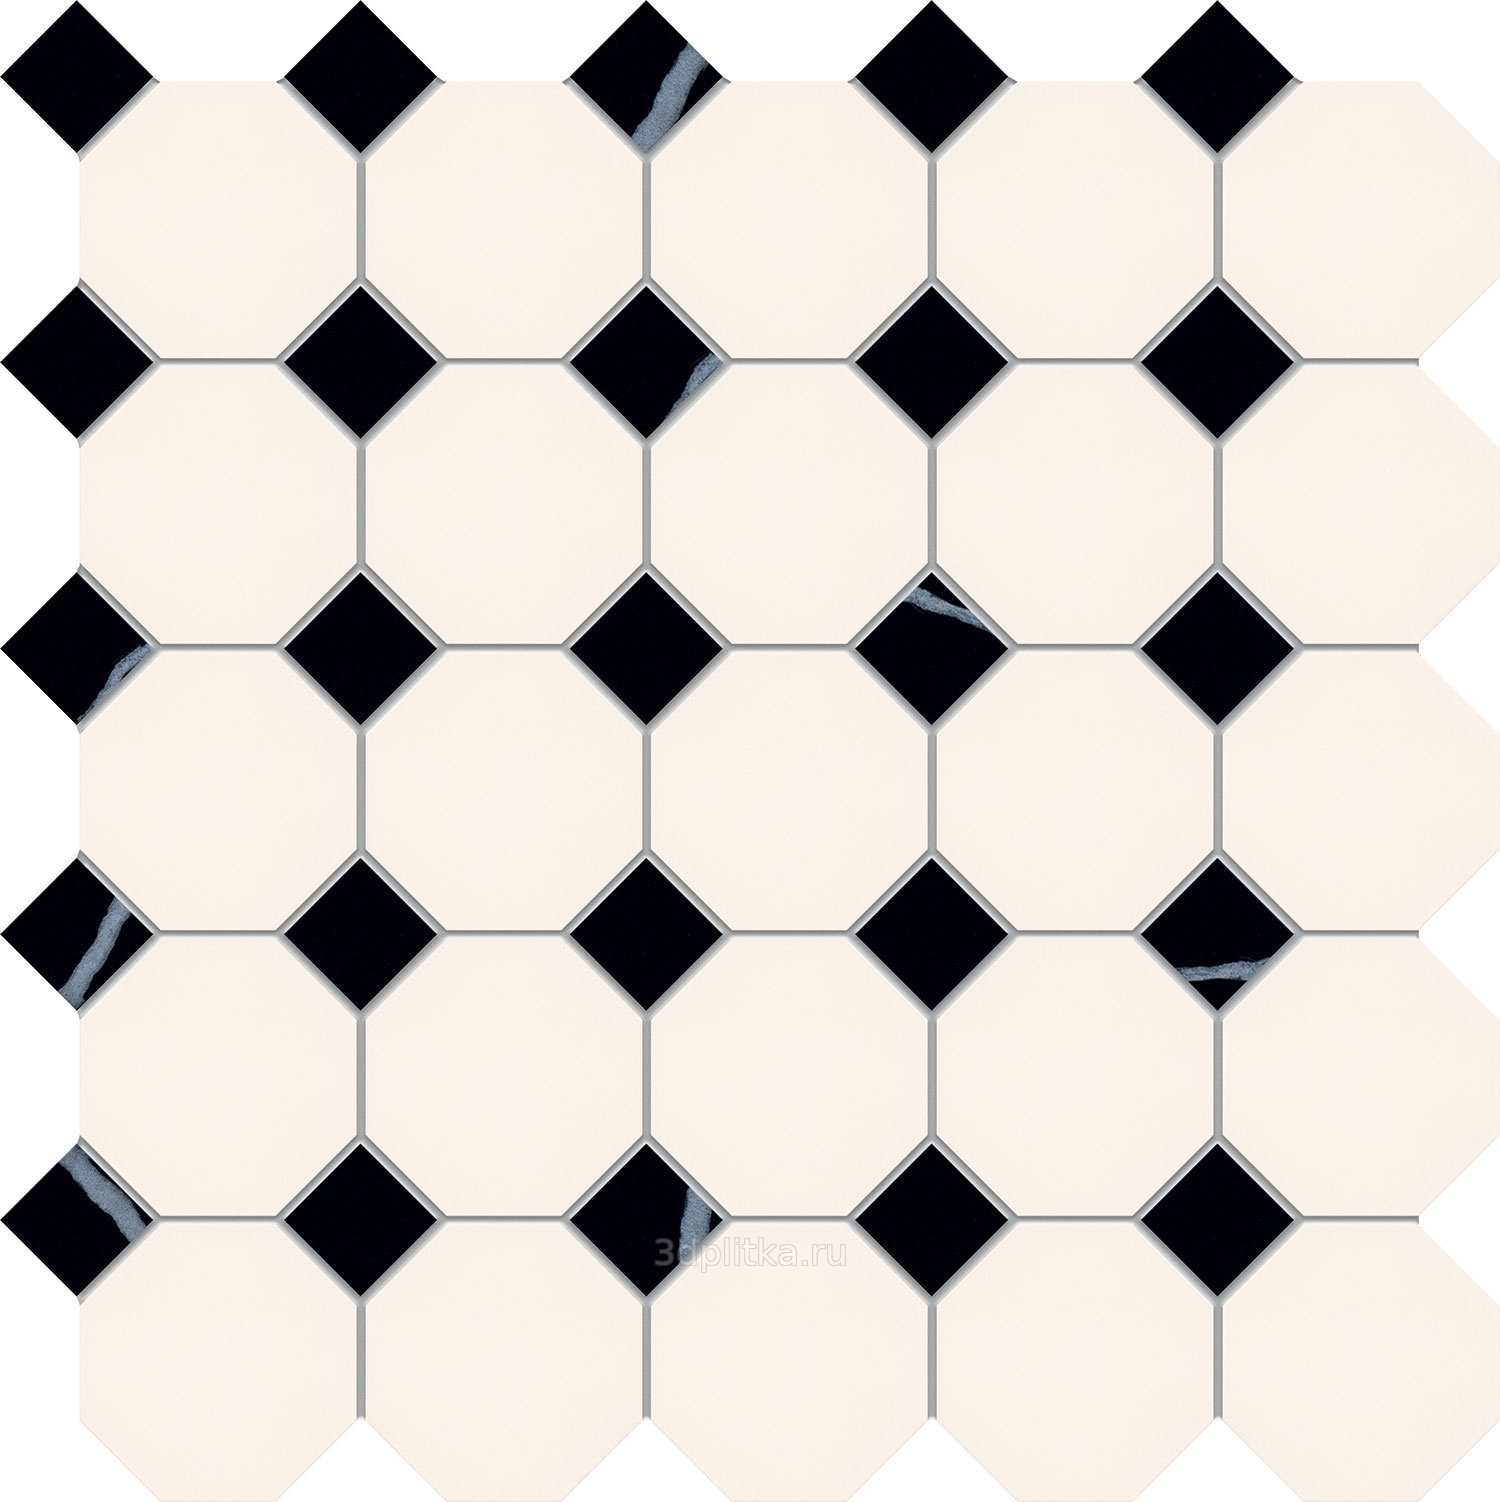 Гранит керамический 4416 oct14-1ch White Octagon 16/Black Dots 14 30x30 см